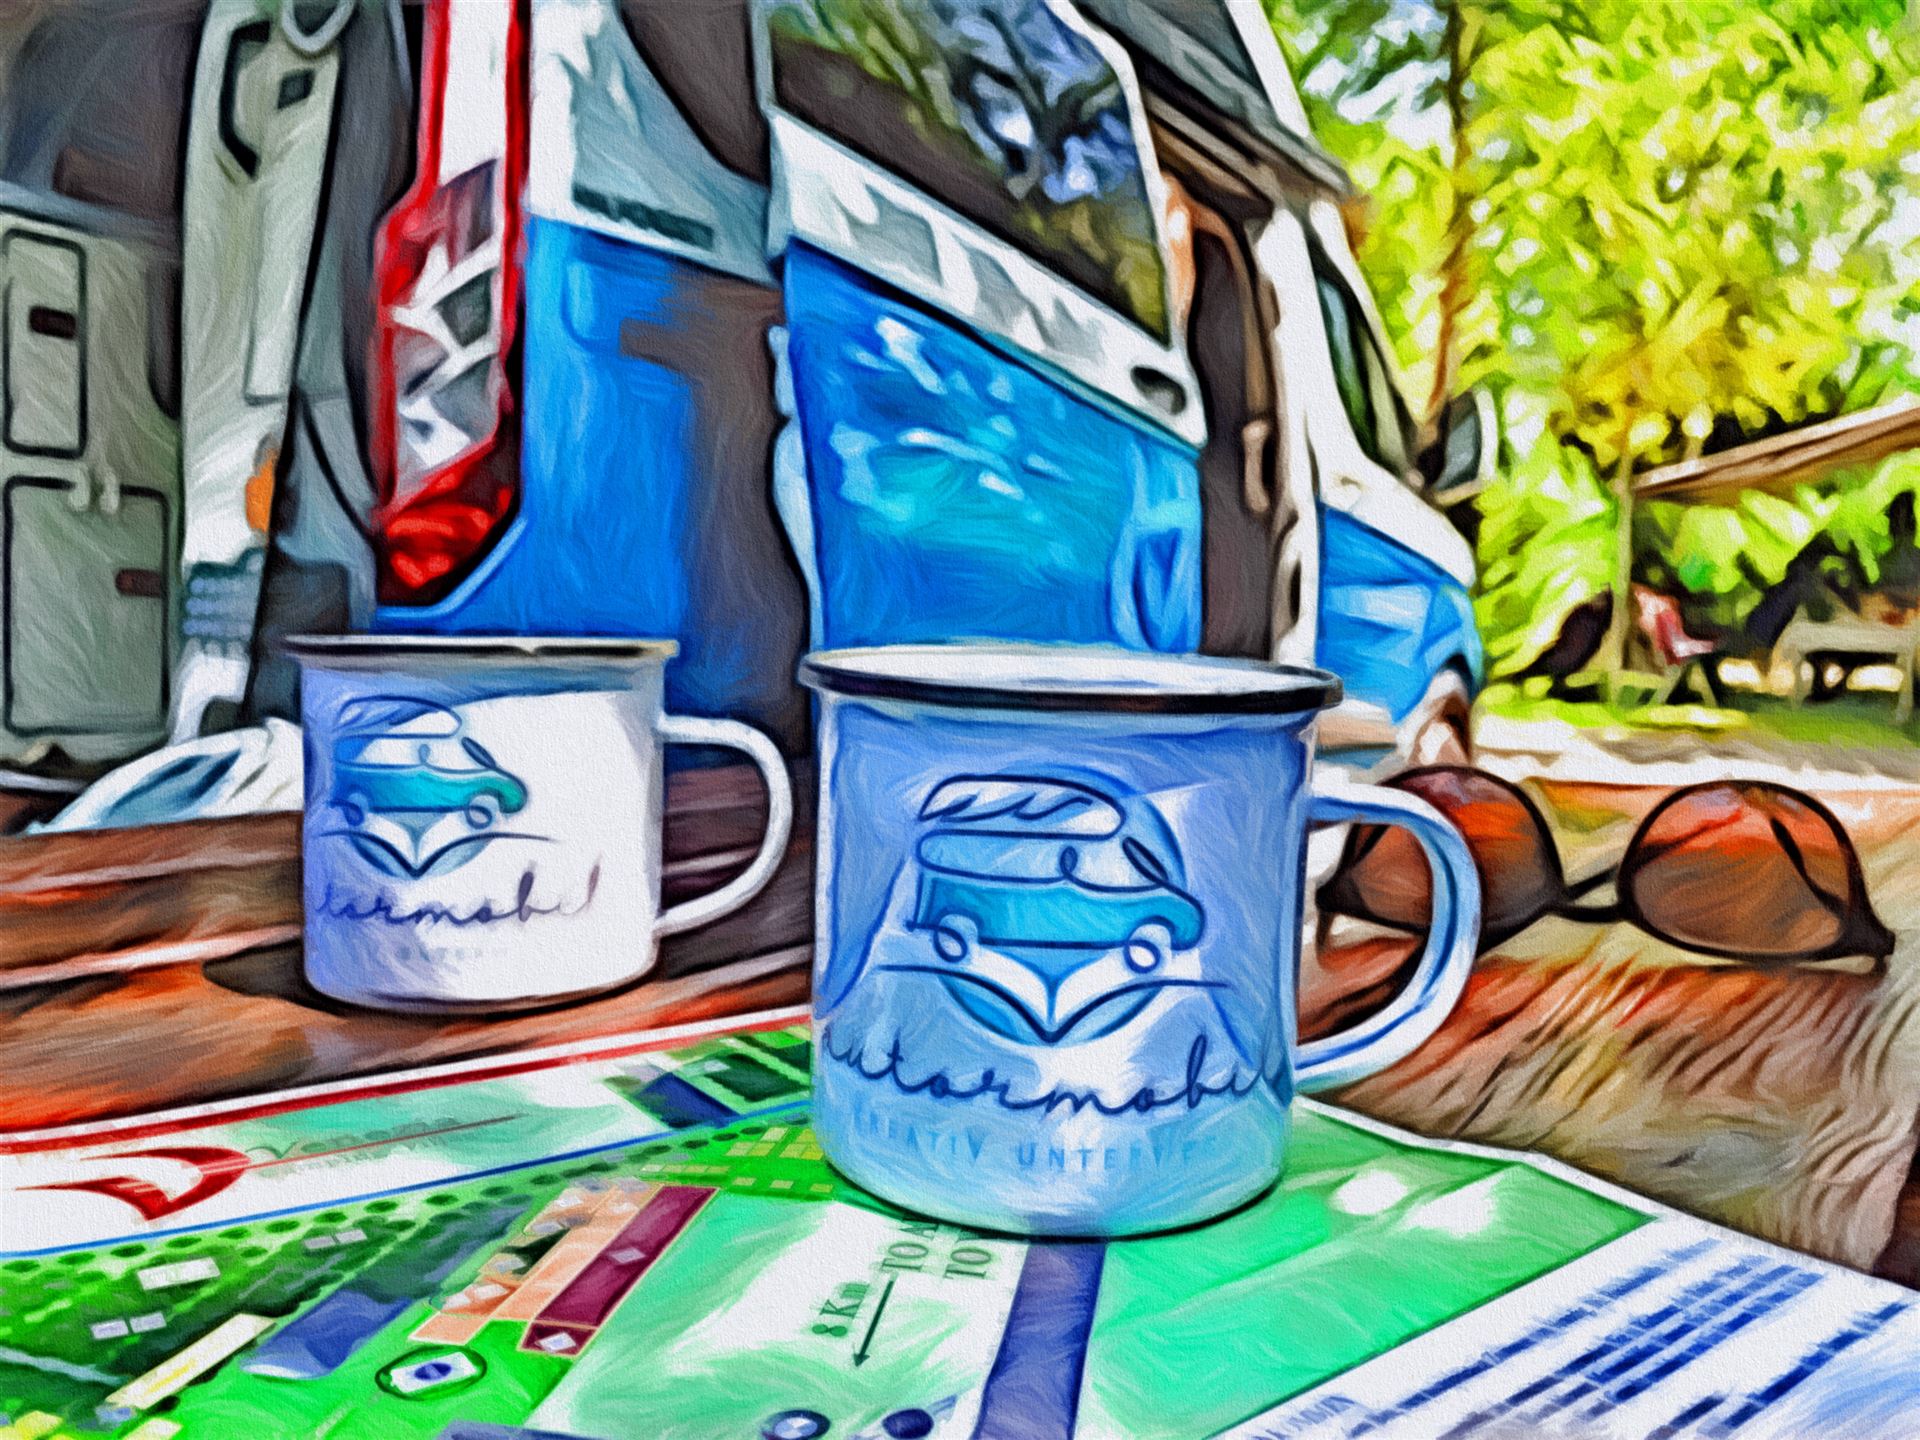 © autormobil.de | Camping mit dem Ford Nugget – Ein Kaffee am Morgen